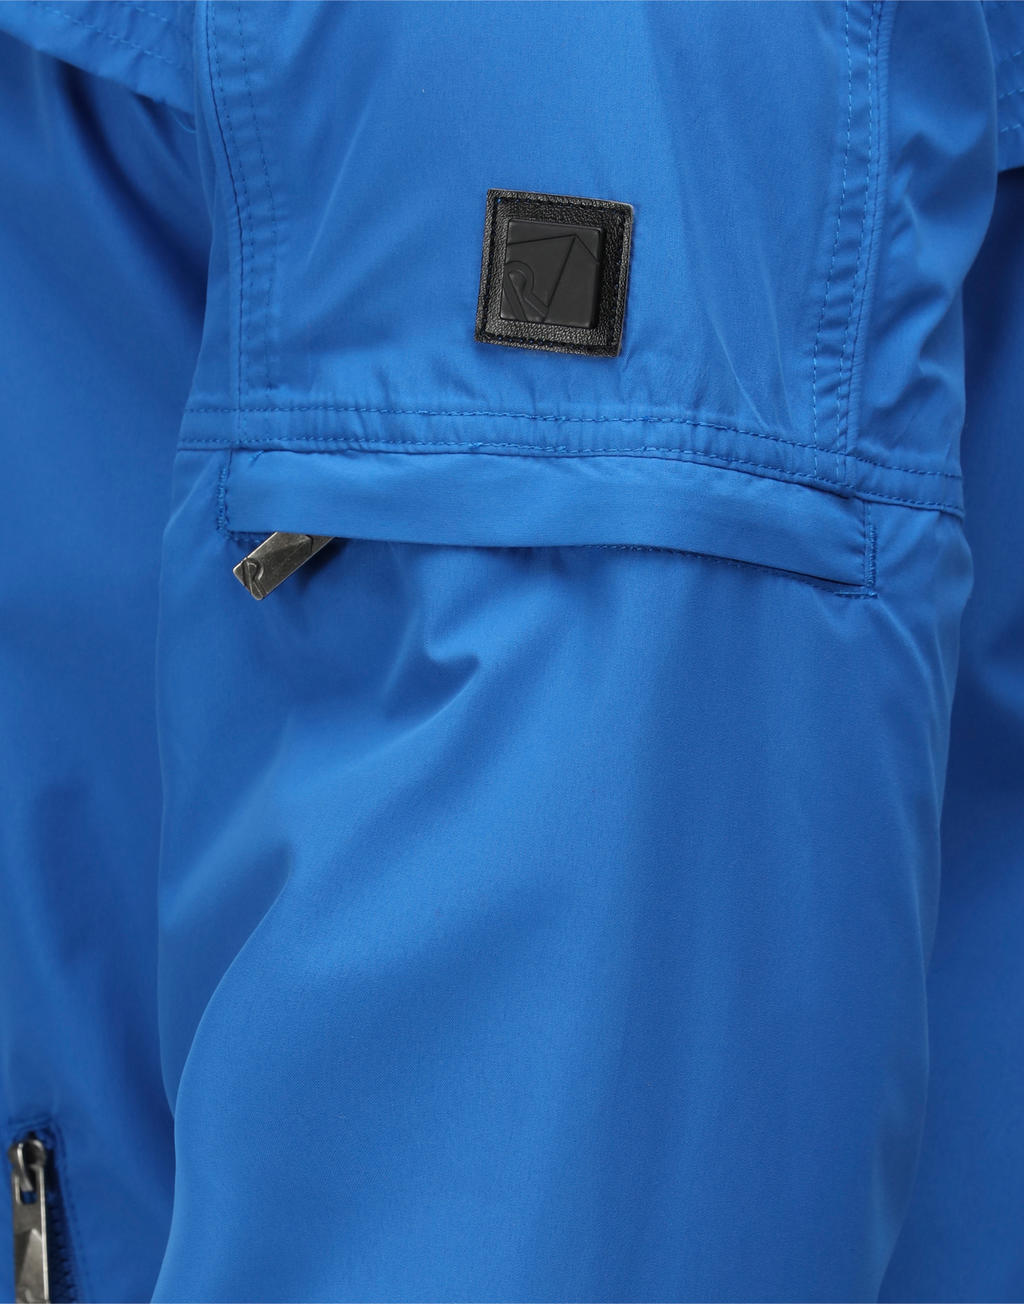  Finn Waterproof Shell Jacket in Farbe Navy